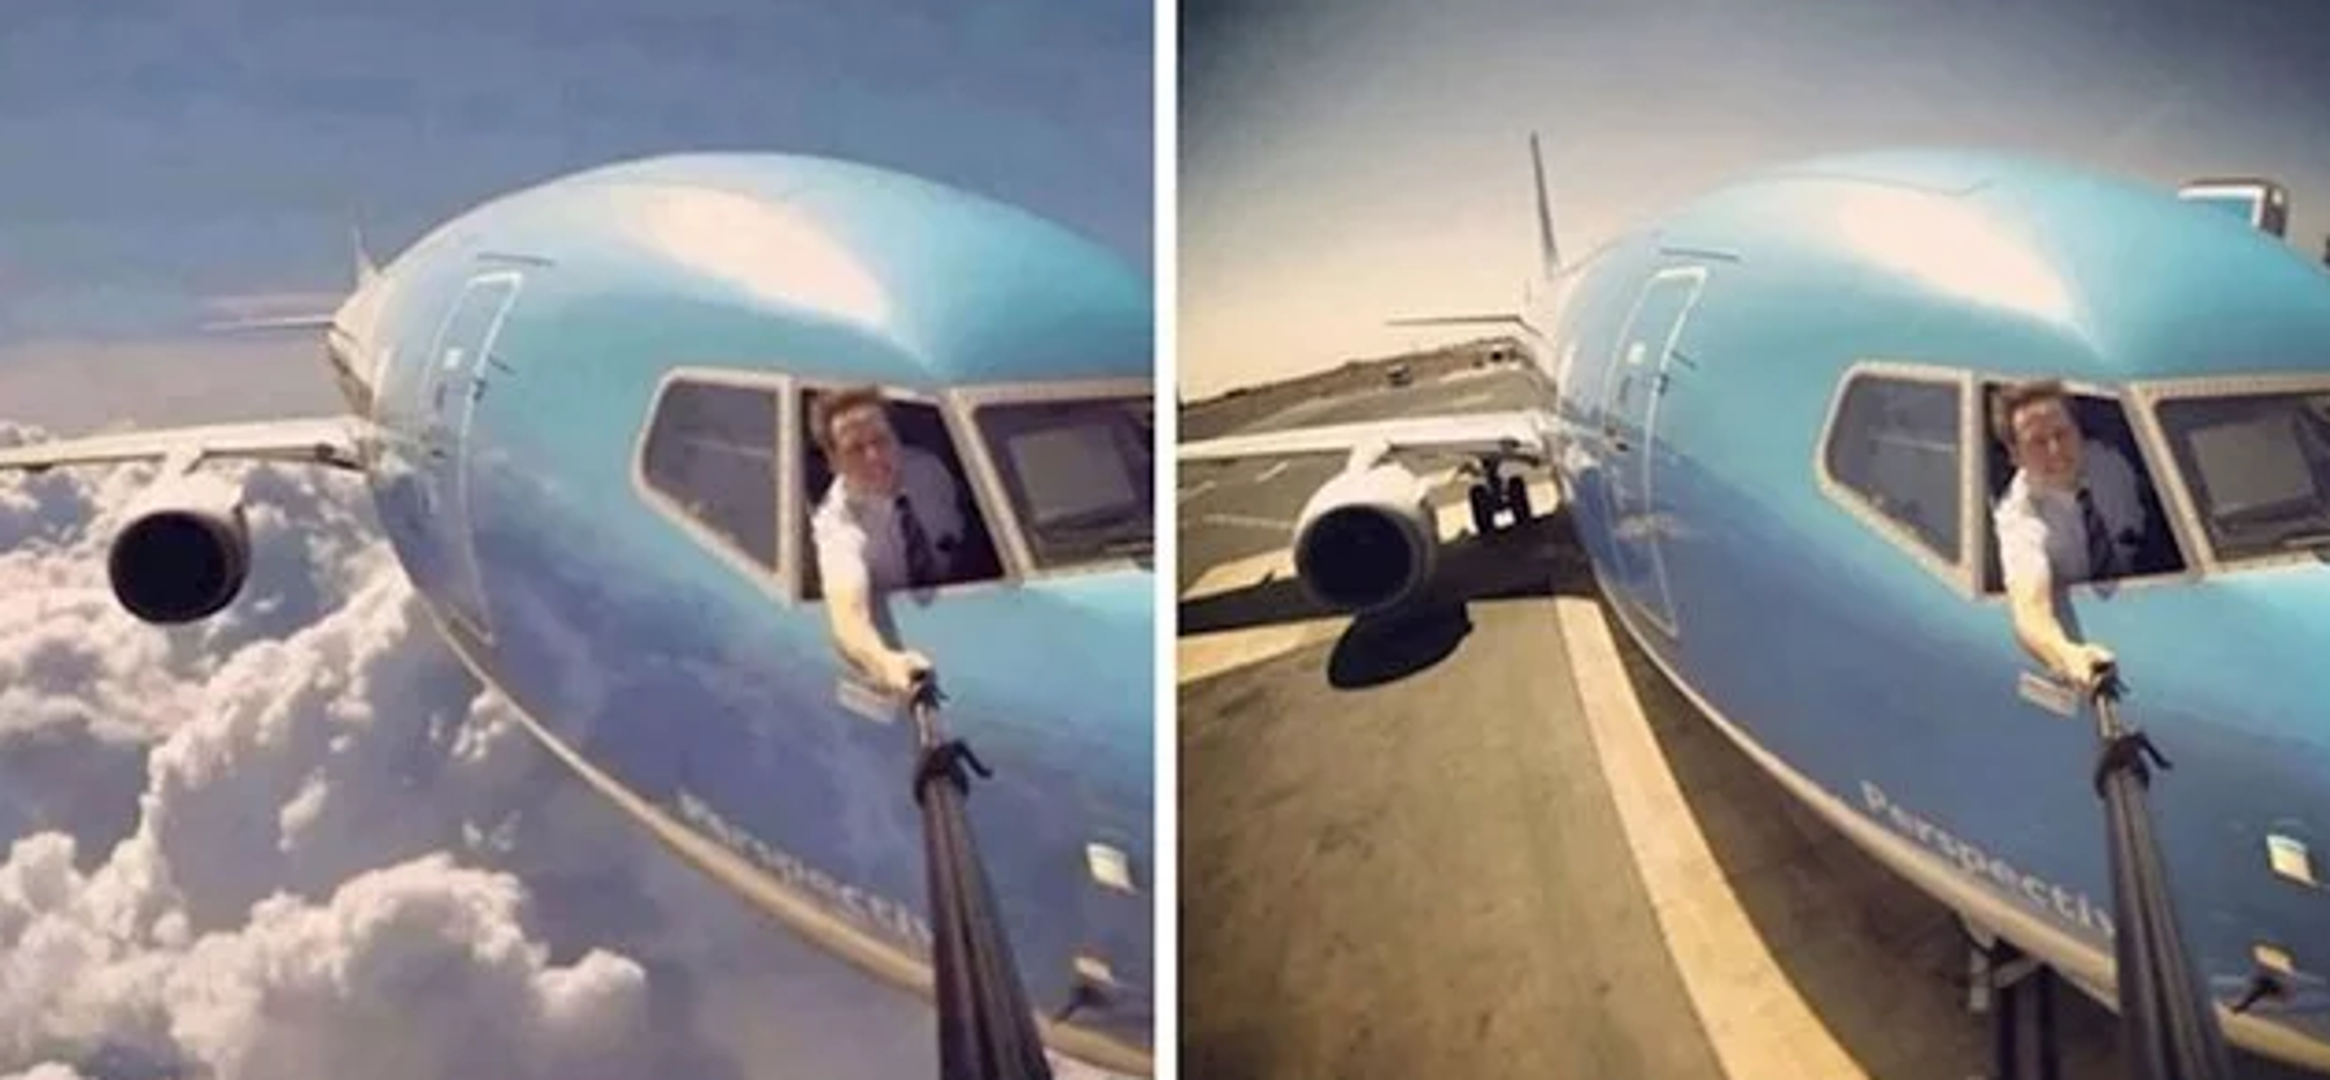 Nemojte ovo pokušavati - selfie štap nije baš toliko čvrst da se njime možete fotografirati u avionu tijekom leta i to kroz prozor! Ova fotografija nastala je na tlu.